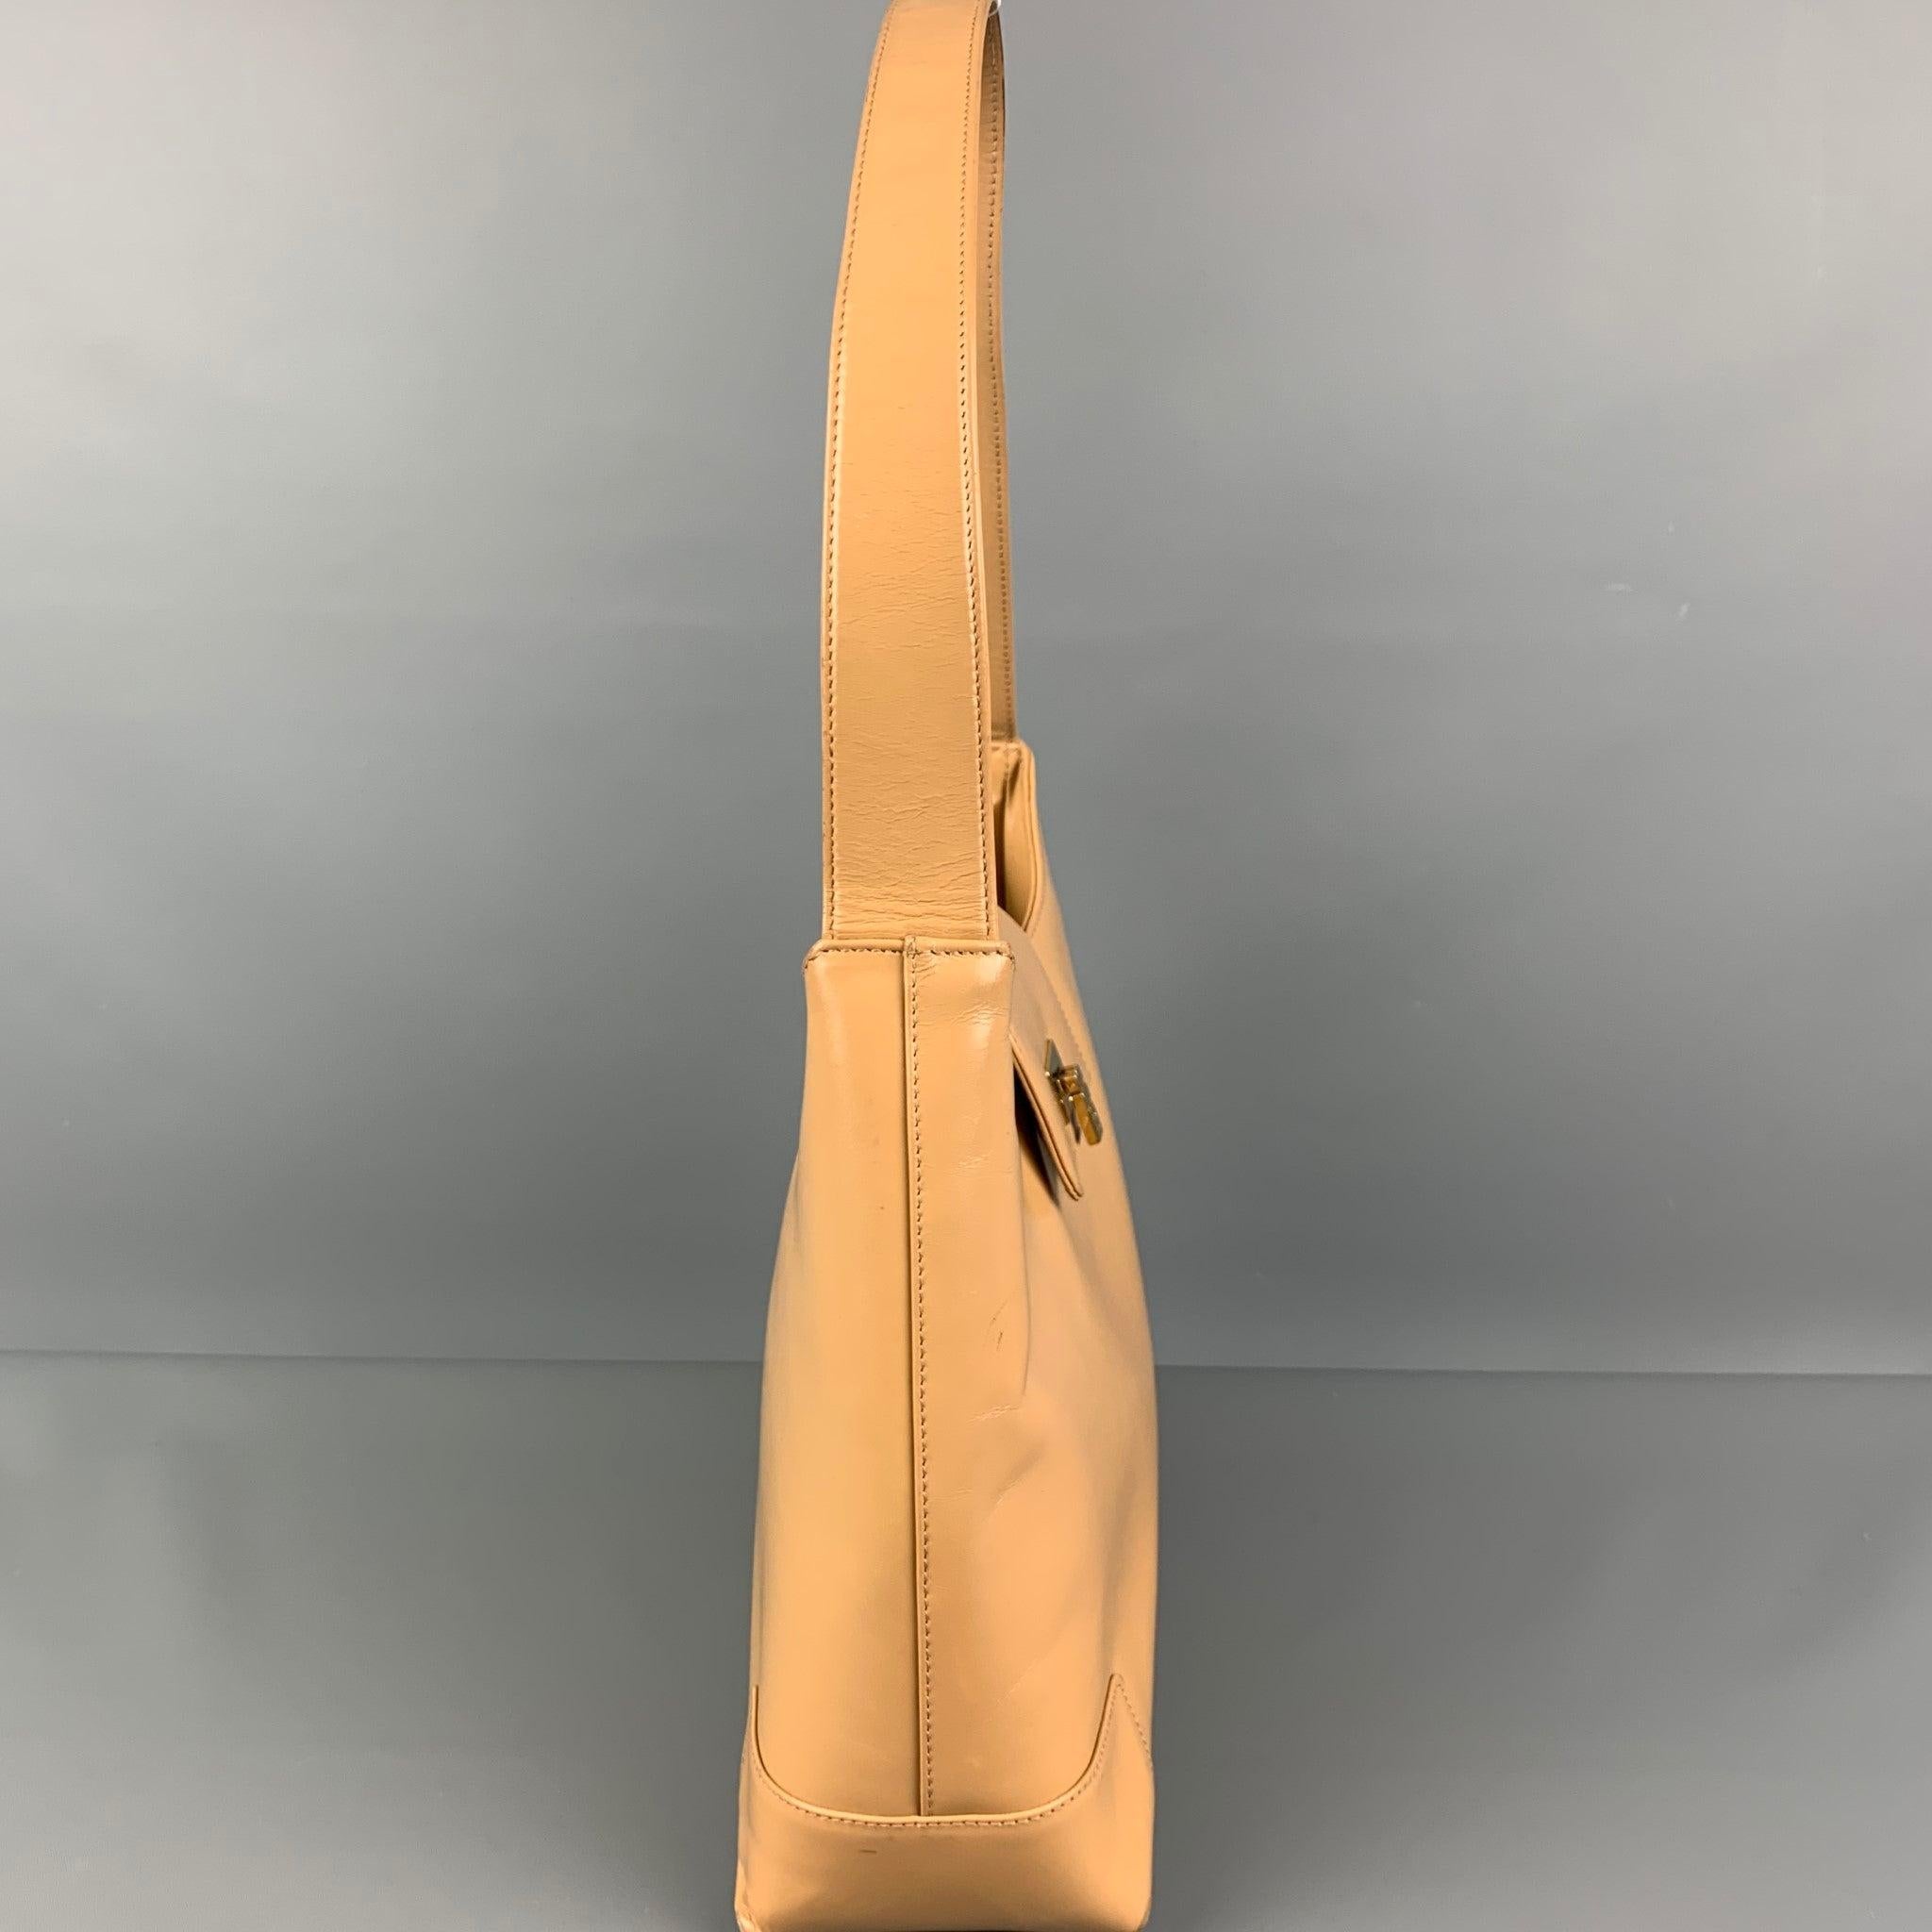 Le sac à main LAMBERTSON TRUEX est en cuir beige et comporte une poignée supérieure, des fentes intérieures et un fermoir en métal doré. Fabriquées en Italie.
Bon
Etat d'occasion. Usures et marques mineures. 

Mesures : 
  Longueur : 11 pouces 